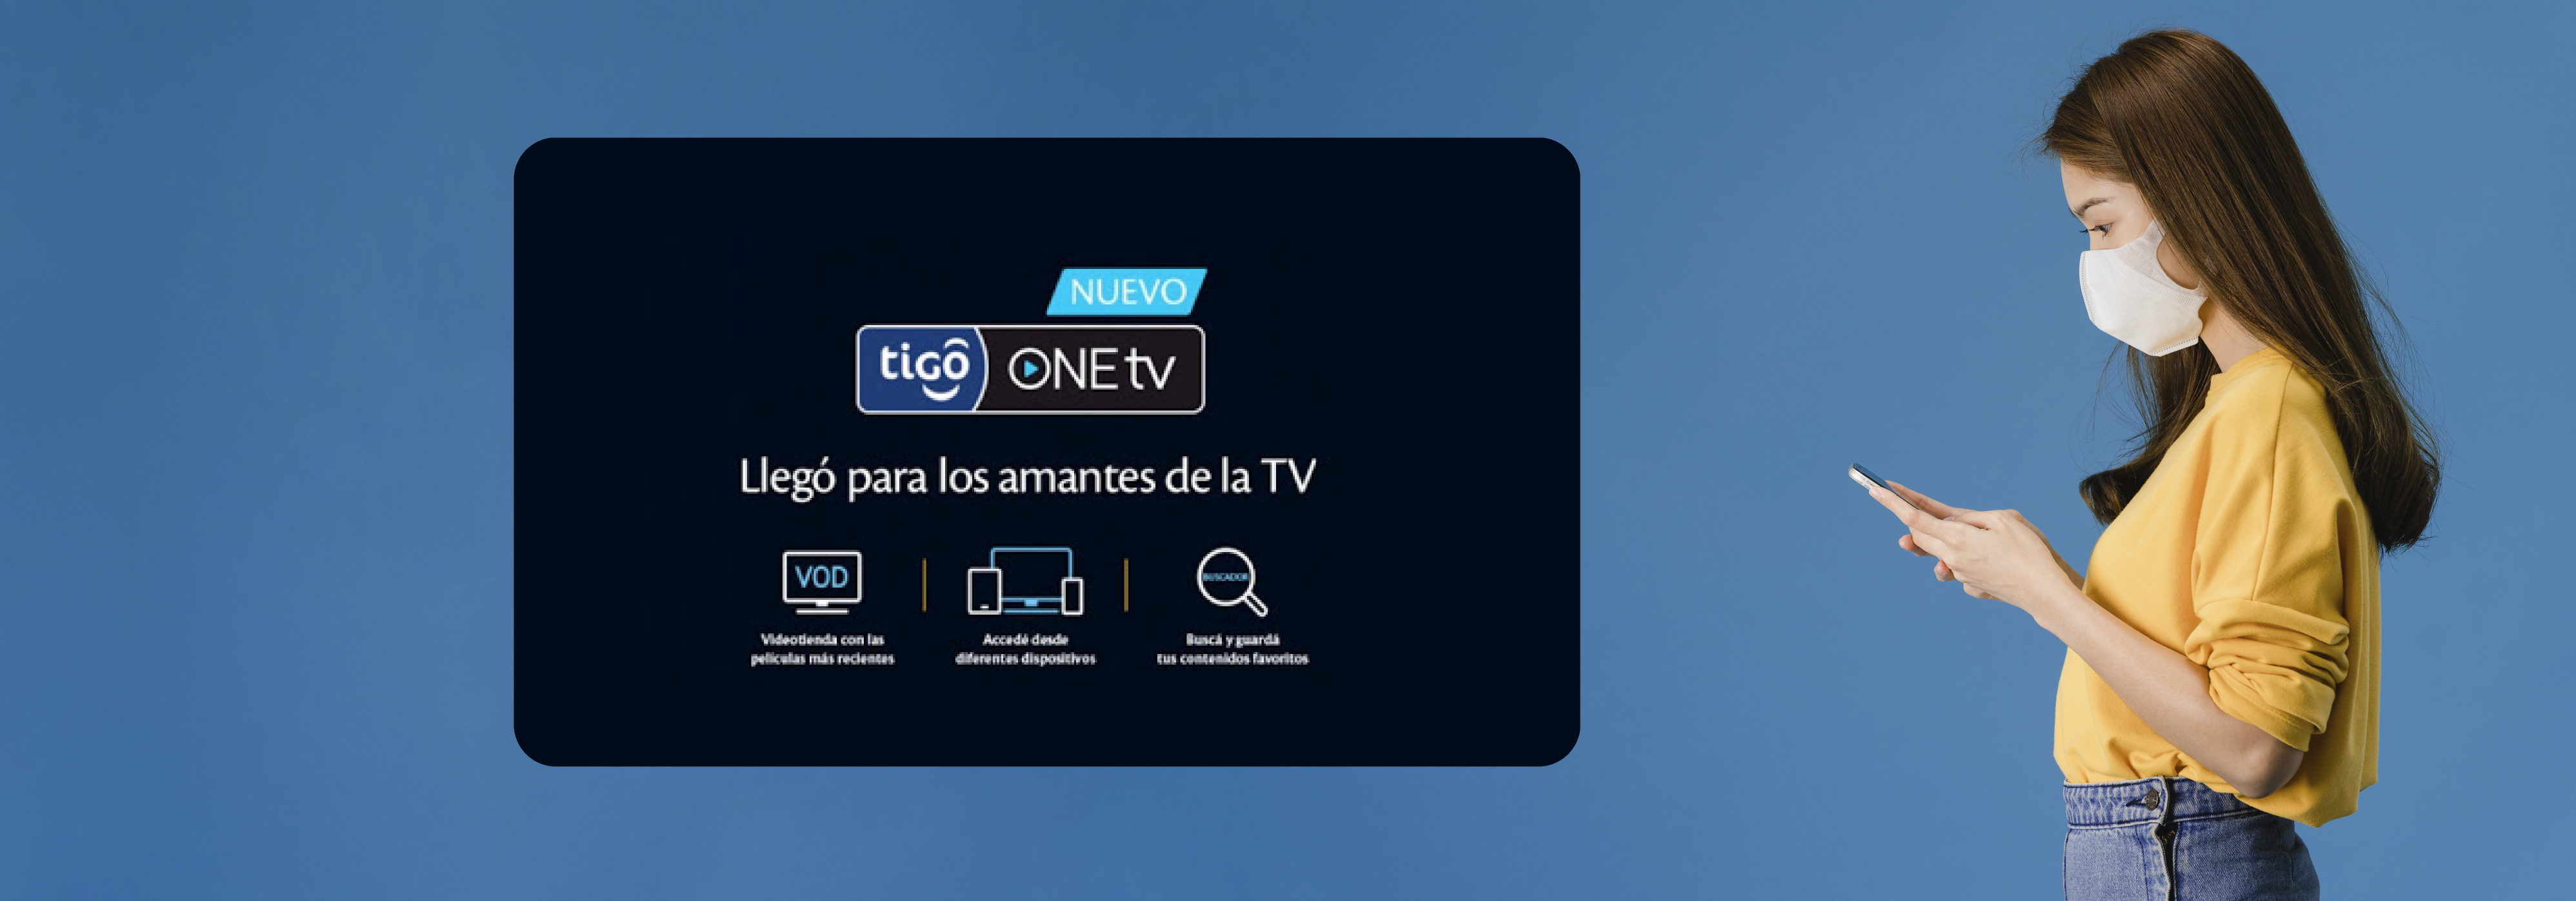 aw-banner-tigo-one-tv.png